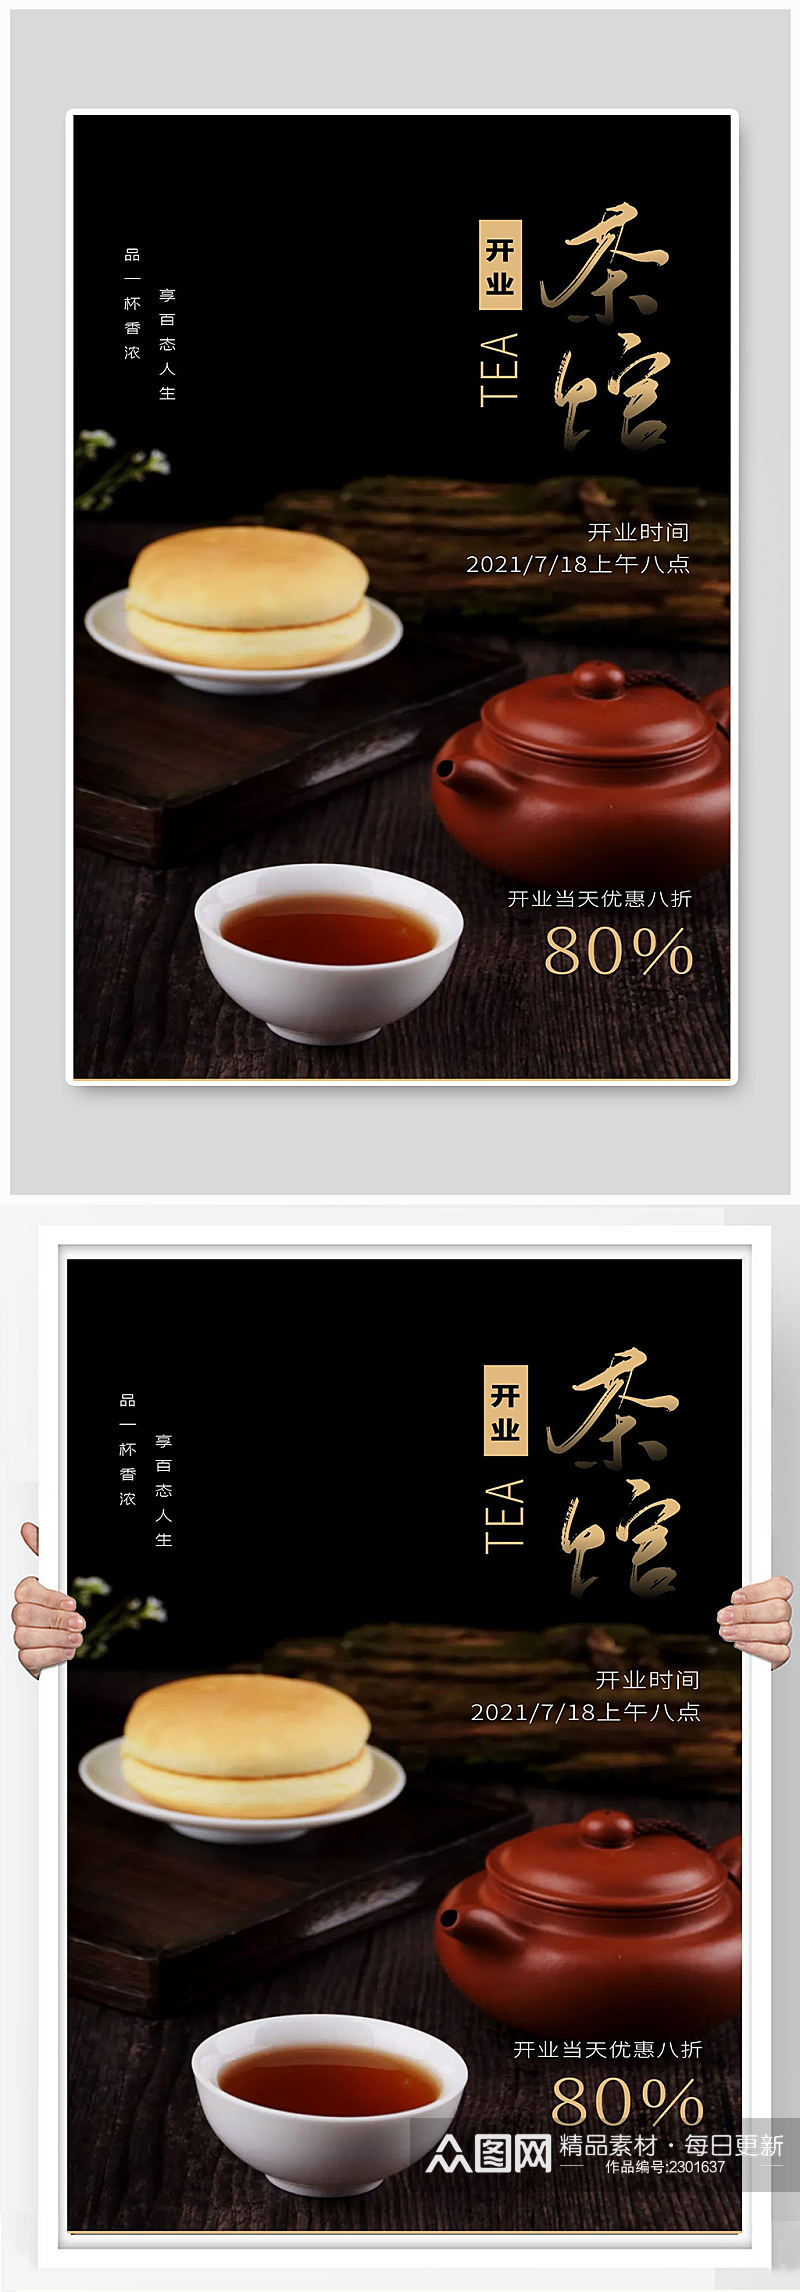 茶馆宣传海报设计制作素材